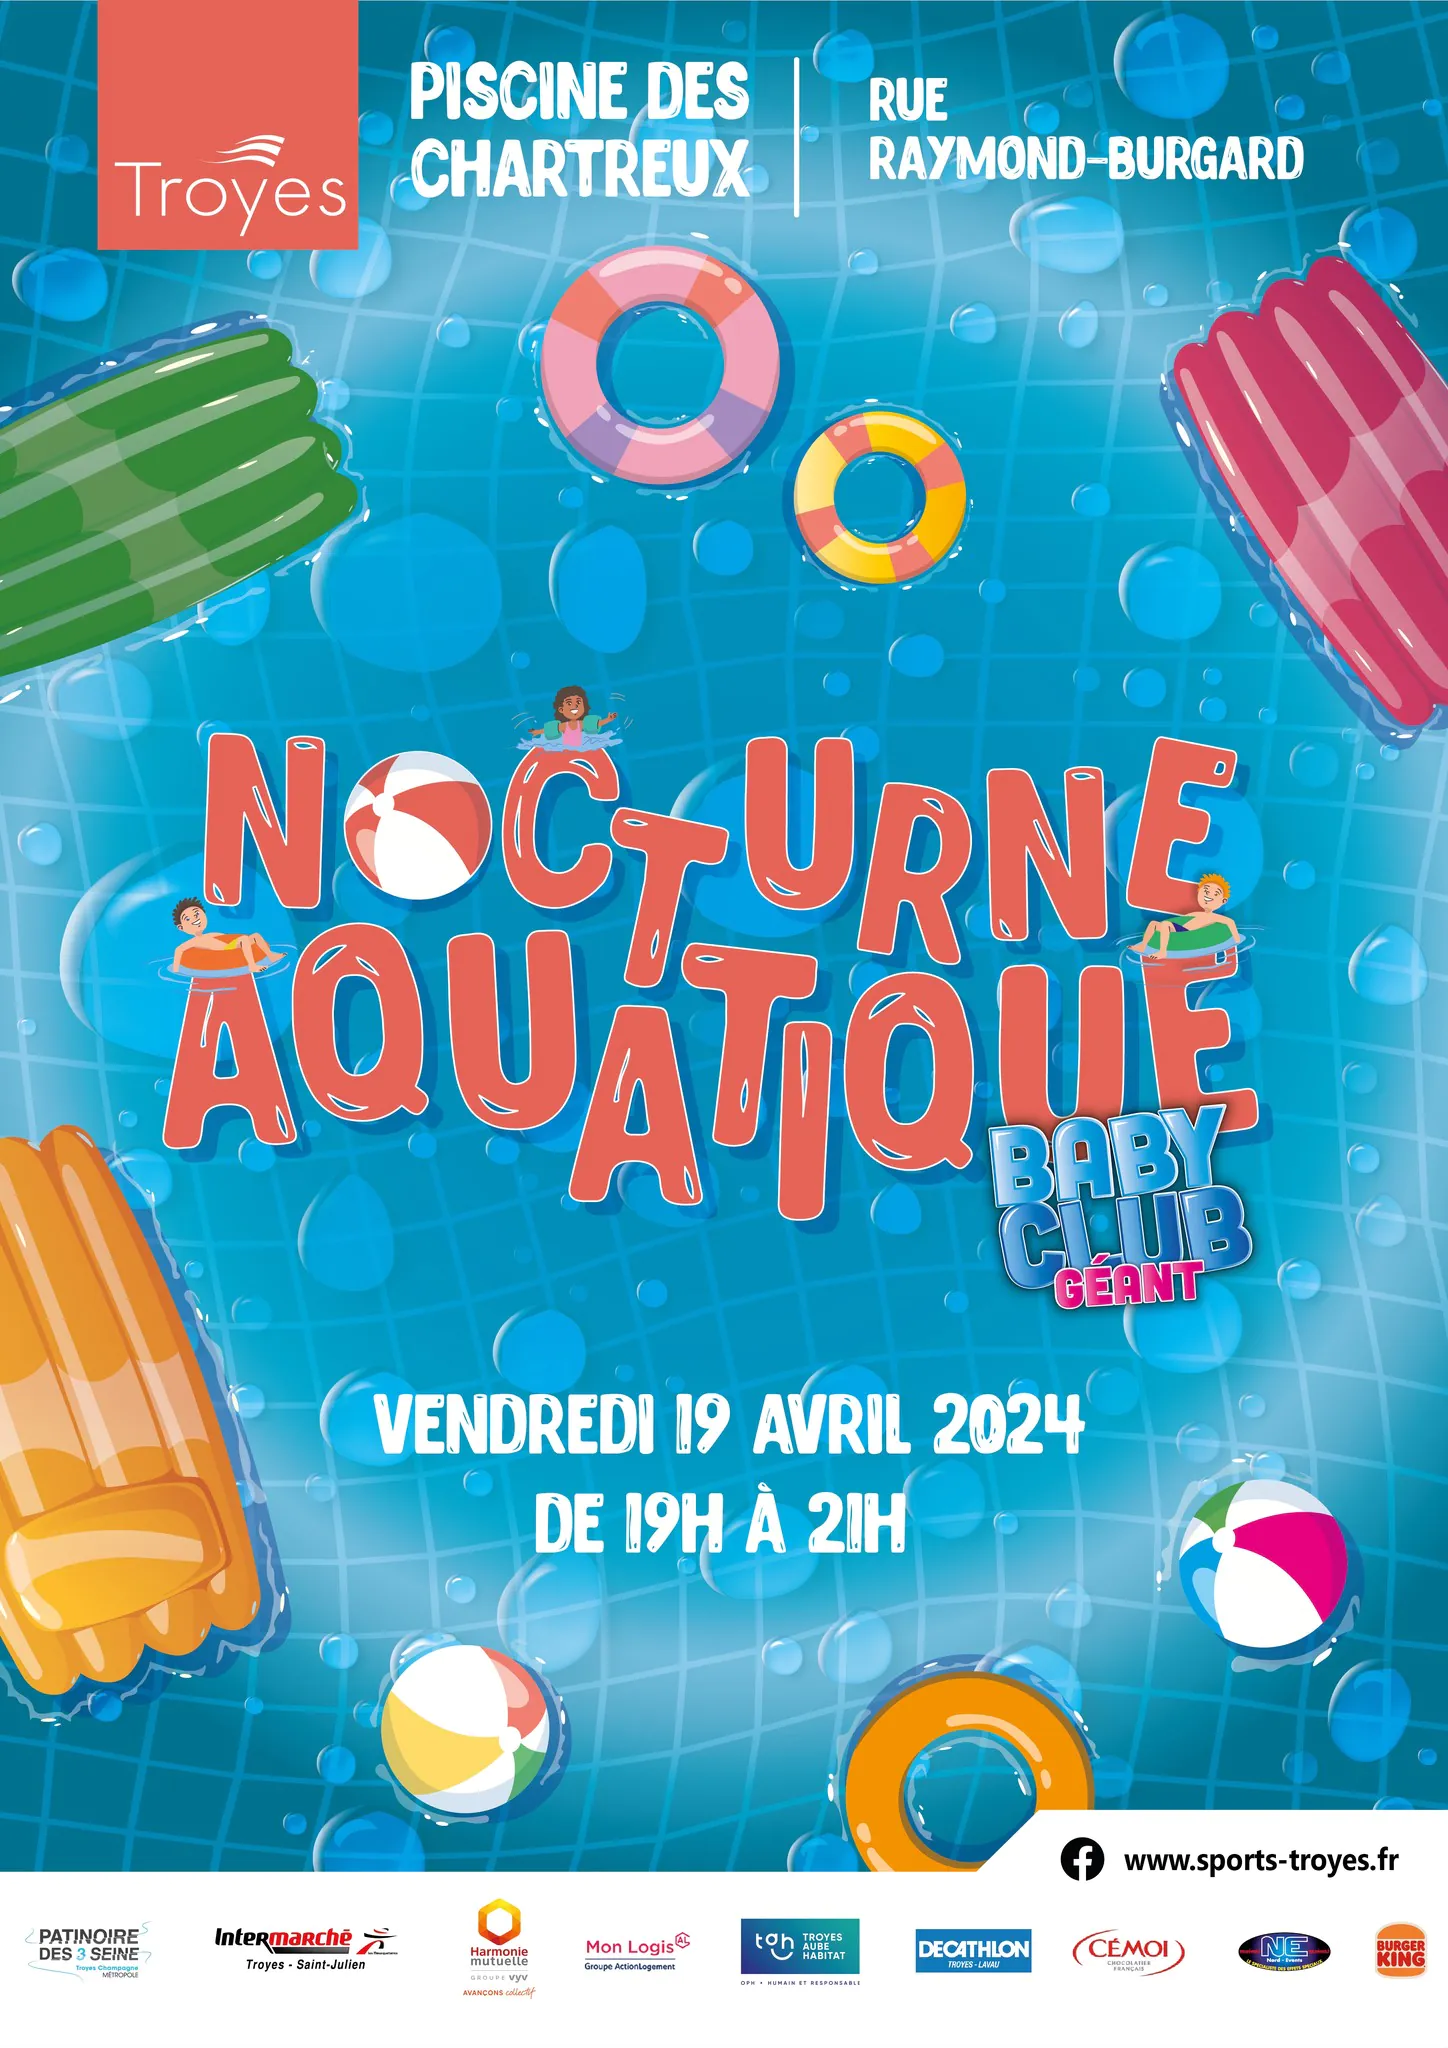 Nocturne aquatique Baby Club Géant